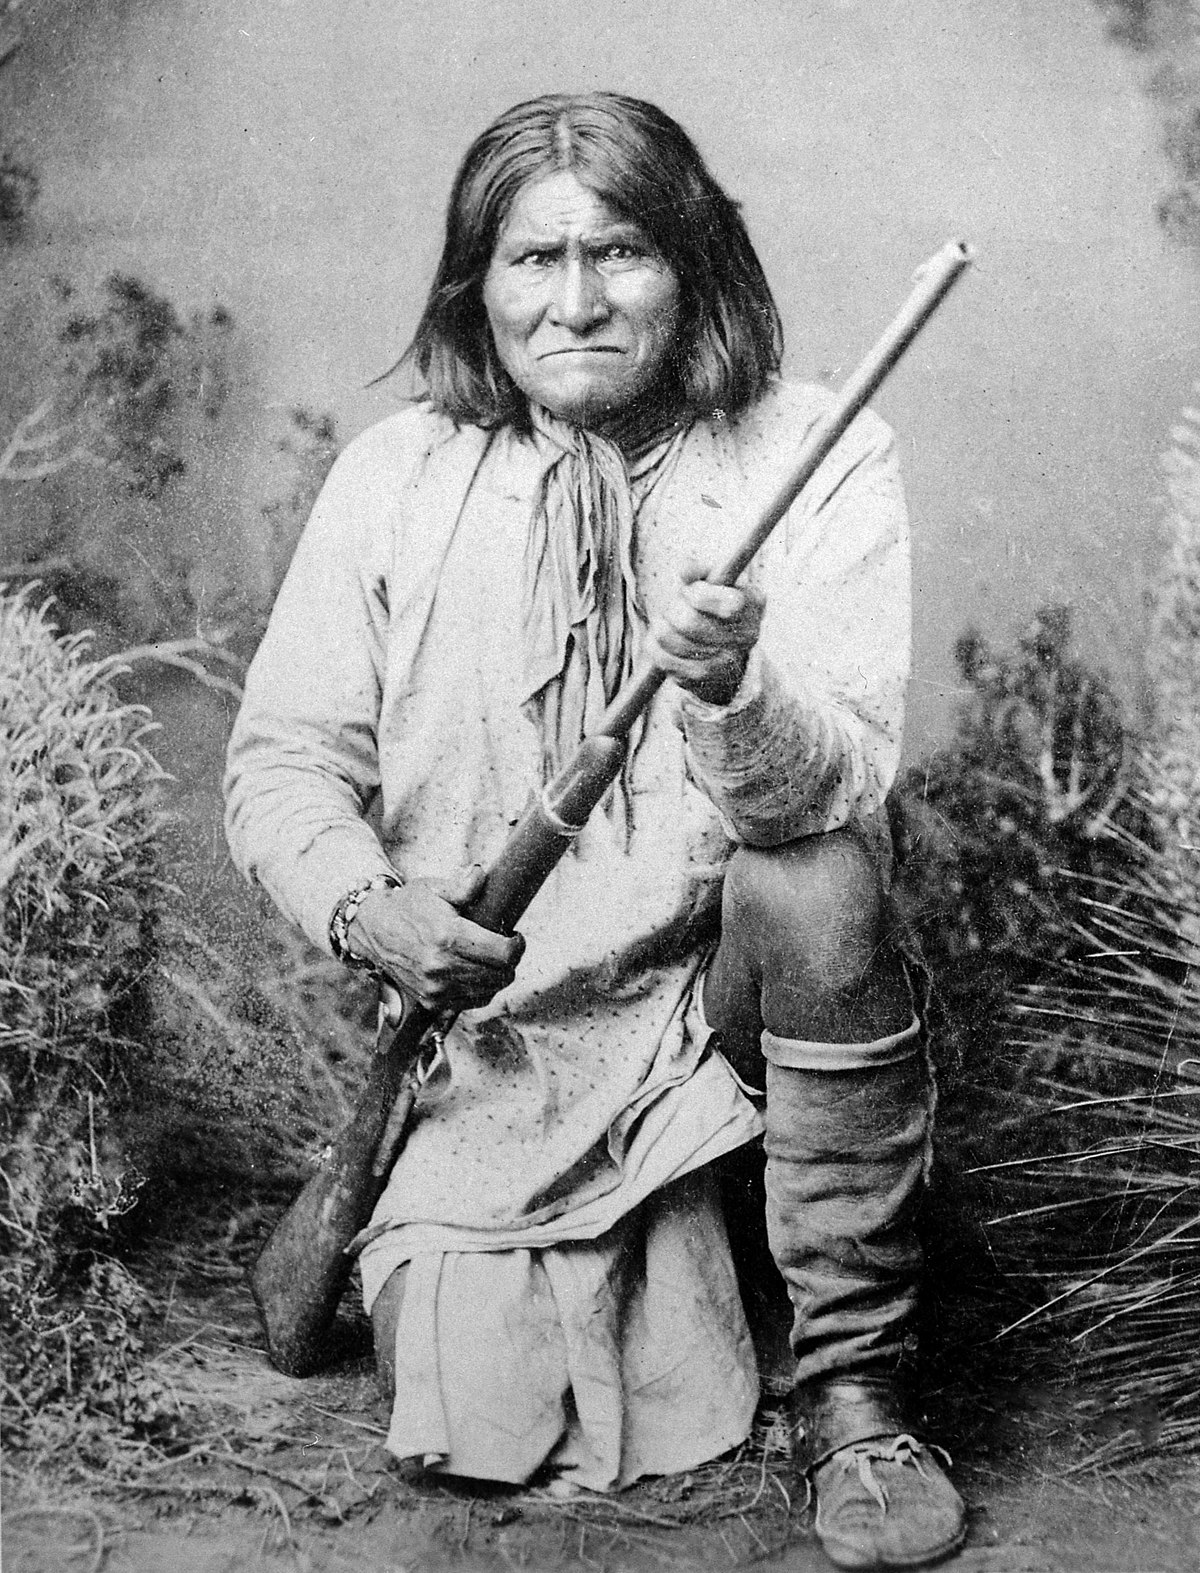  Biografie und Geschichte von Geronimo